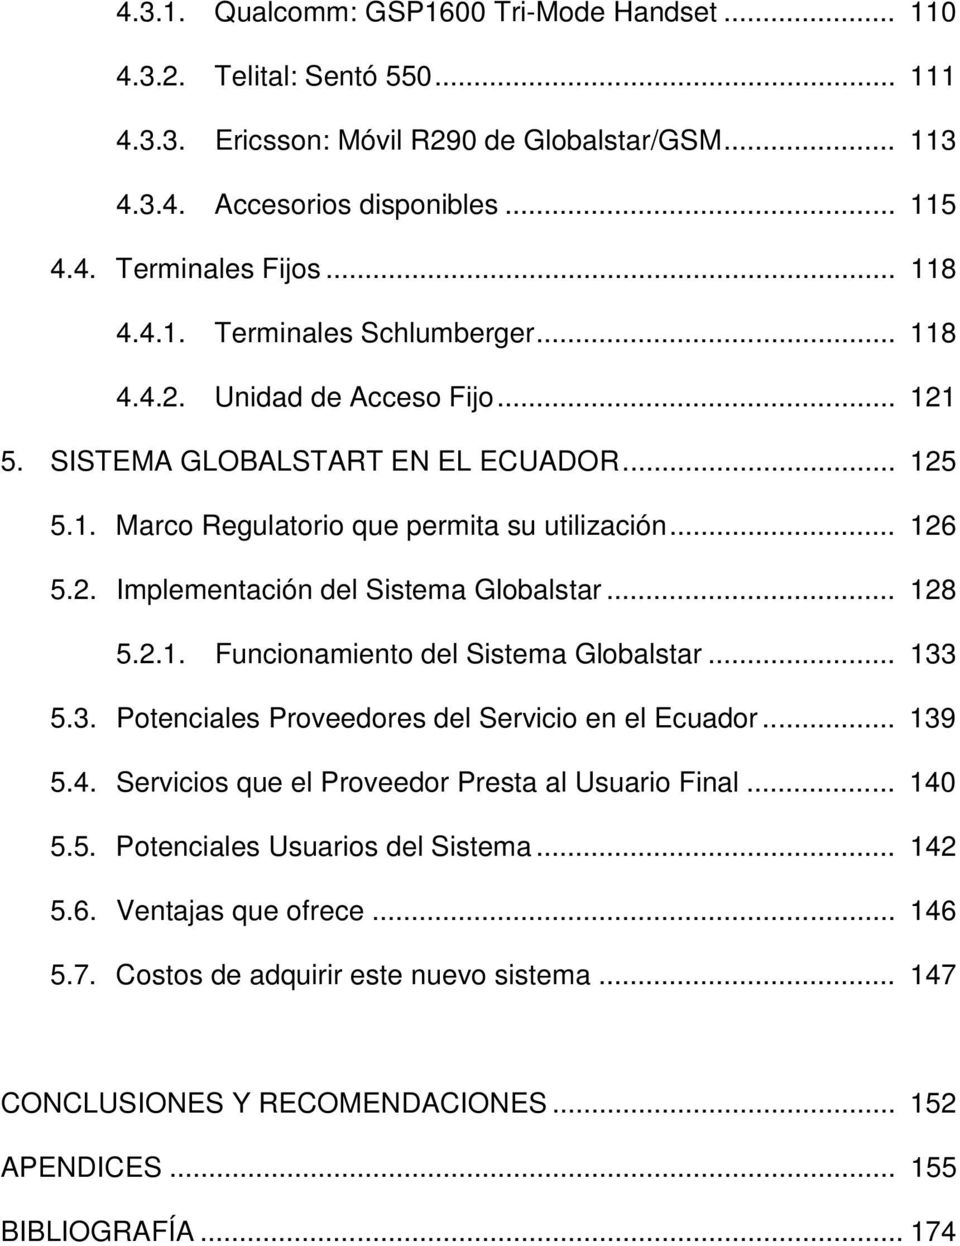 .. 128 5.2.1. Funcionamiento del Sistema Globalstar... 133 5.3. Potenciales Proveedores del Servicio en el Ecuador... 139 5.4. Servicios que el Proveedor Presta al Usuario Final... 140 5.5. Potenciales Usuarios del Sistema.